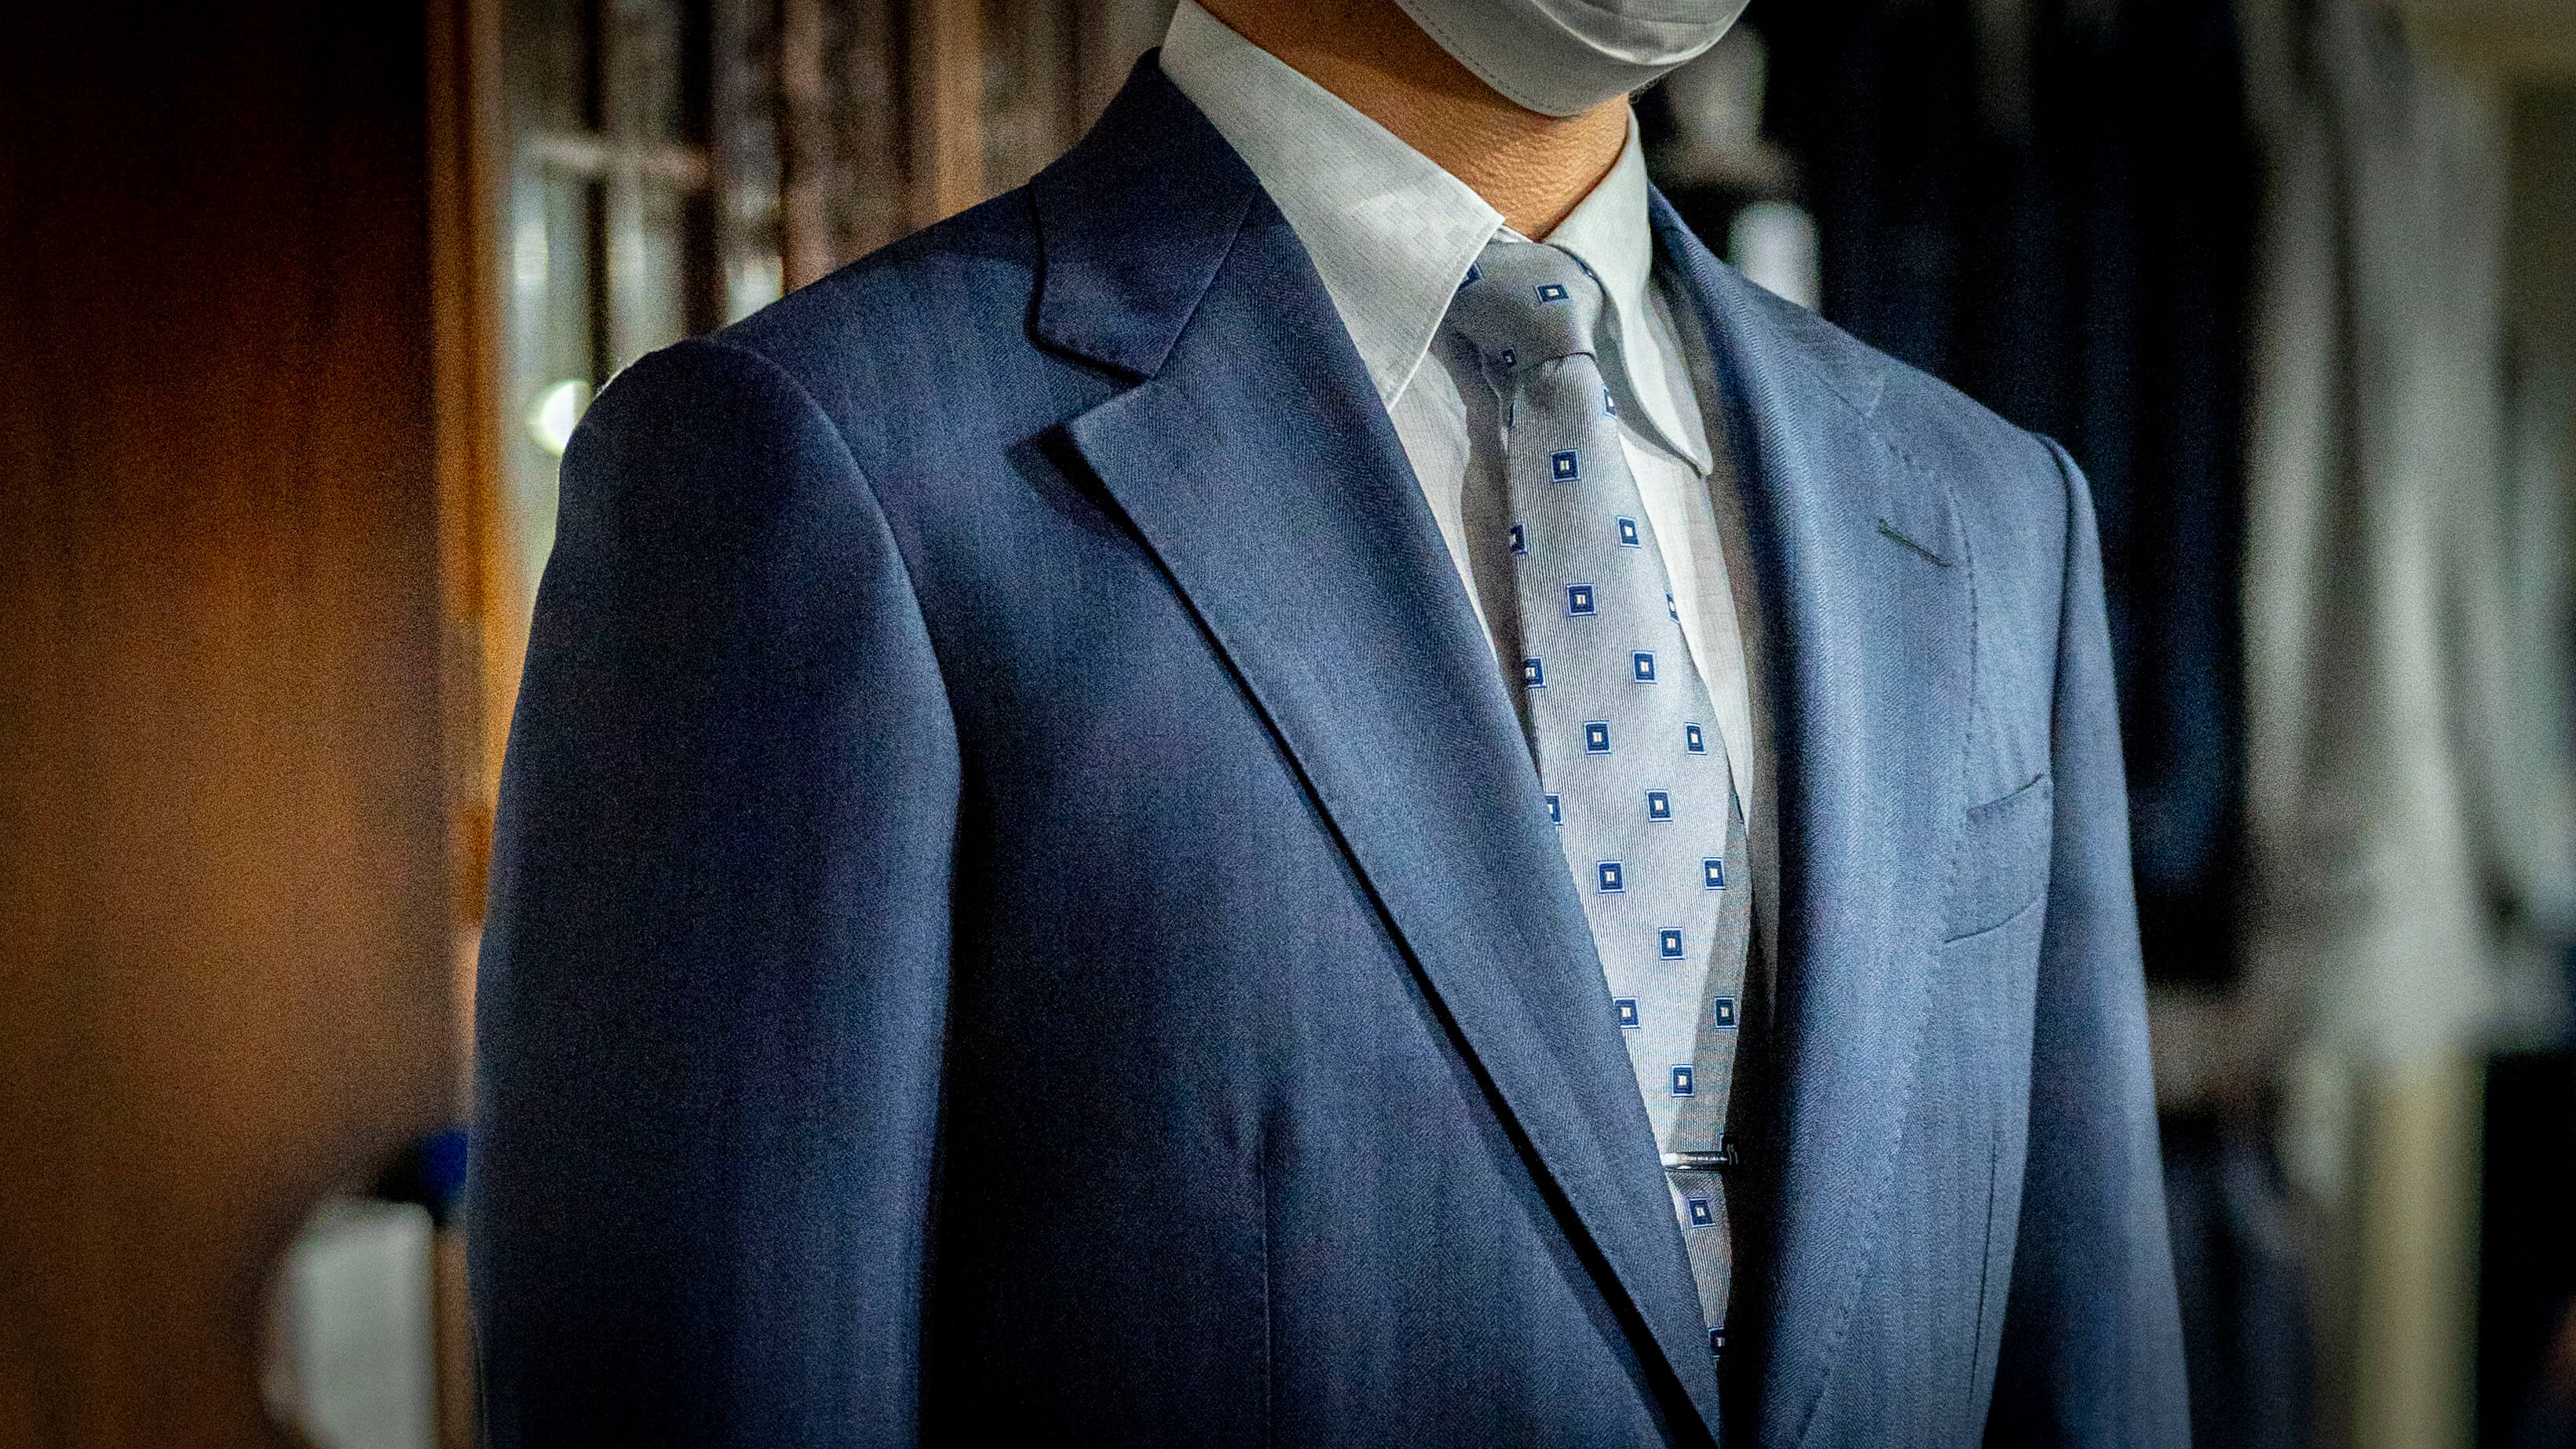 国産ウールを使用したオーダースーツ “ビジネス使いしやすい細幅ストライプのネイビースーツ”